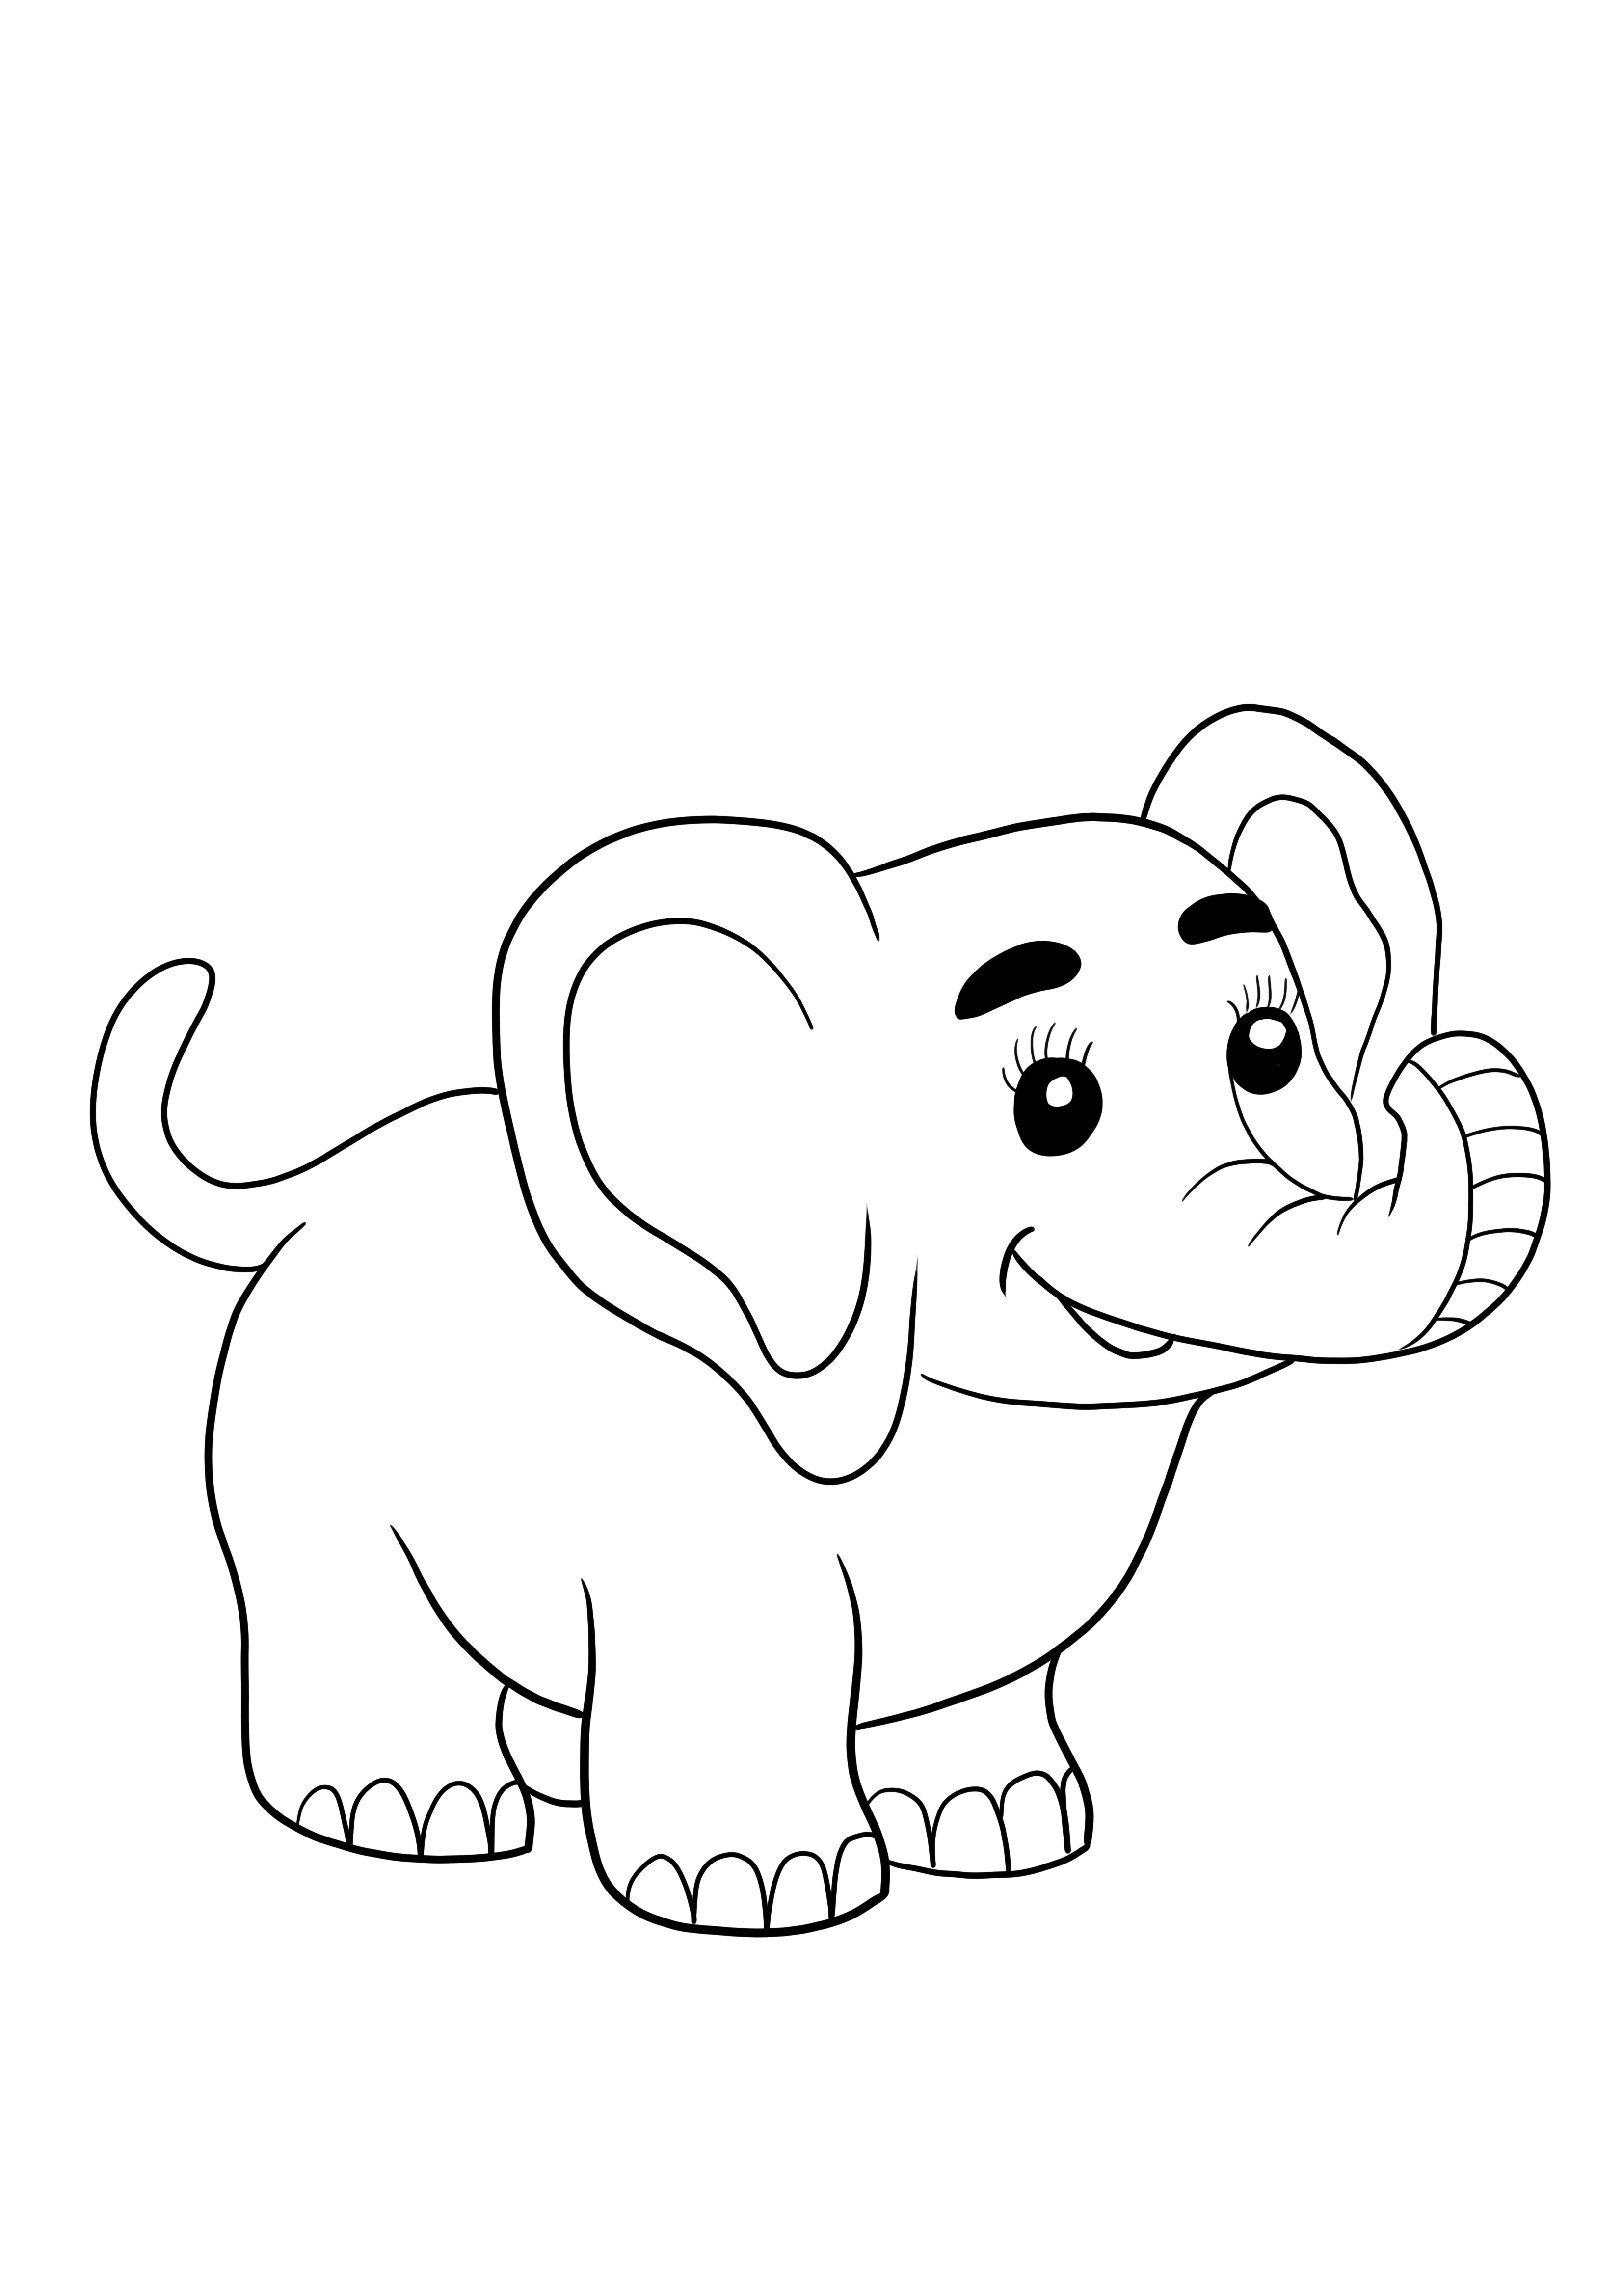 Bebê elefante fofo grátis para imprimir e colorir para crianças de todas as idades